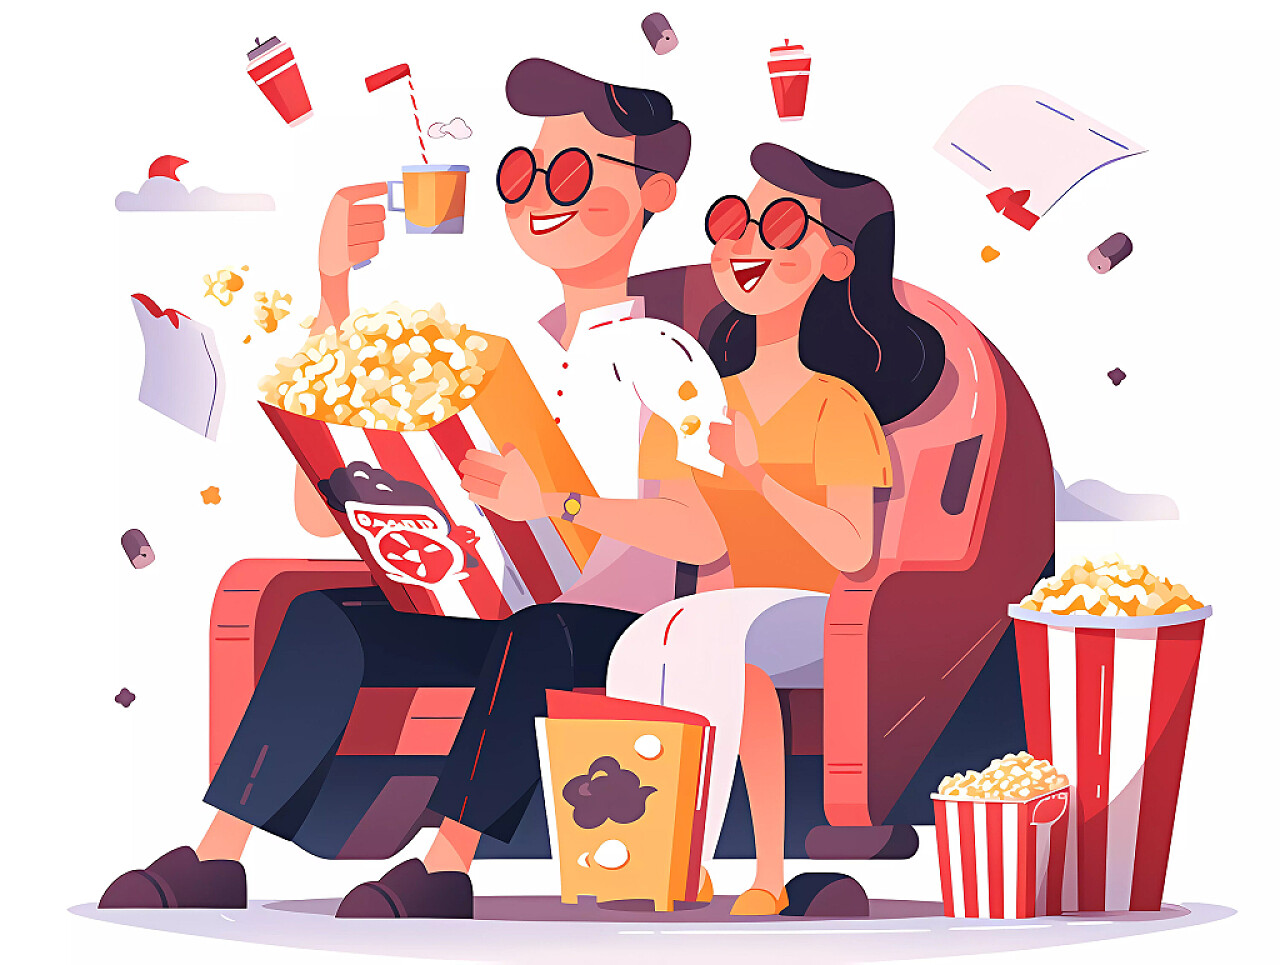 浪漫情侣戴3D眼镜在电影院观影吃爆米花场景